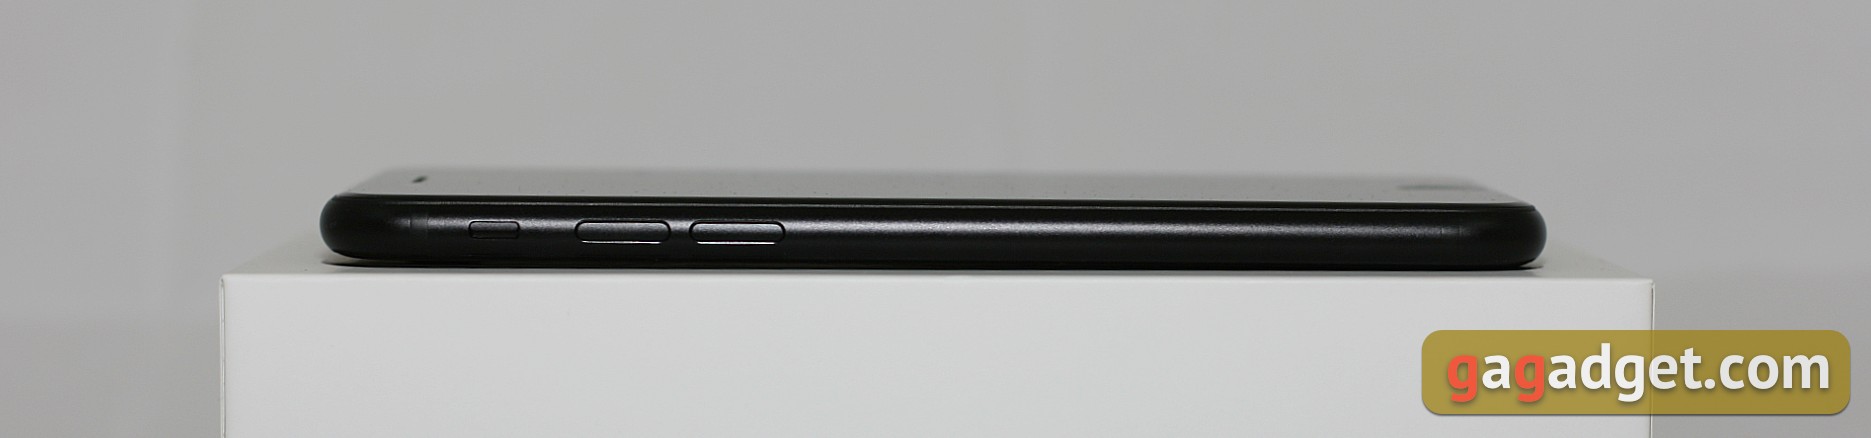 Обзор iPhone SE 2: самый продаваемый айфон 2020 года-6